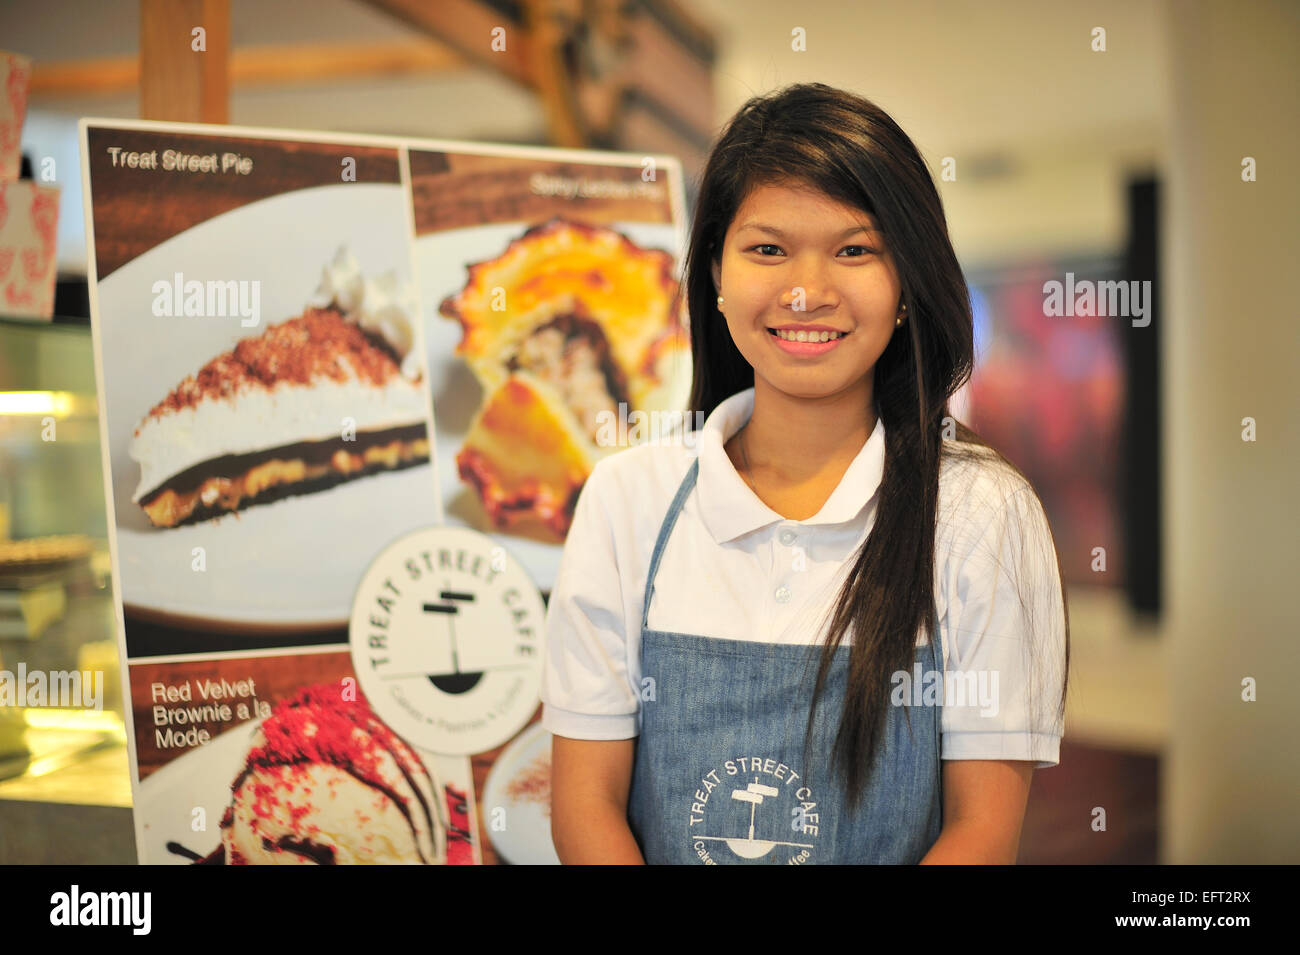 Serveuse à traiter Street Cafe Centre Ayala Cebu City aux Philippines Banque D'Images